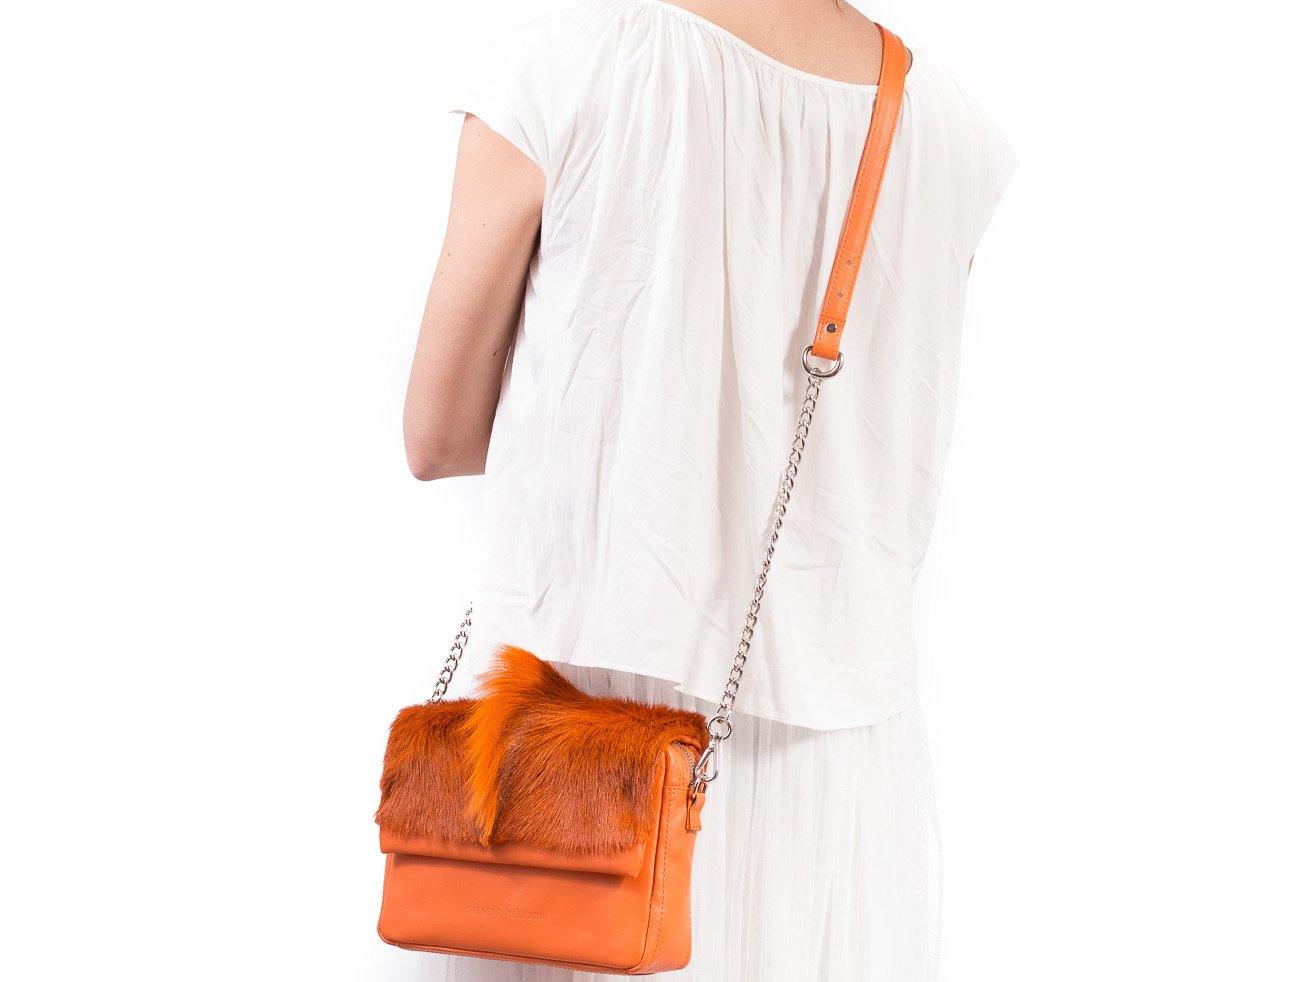 sherene melinda springbok hair-on-hide orange leather shoulder bag fan front strap